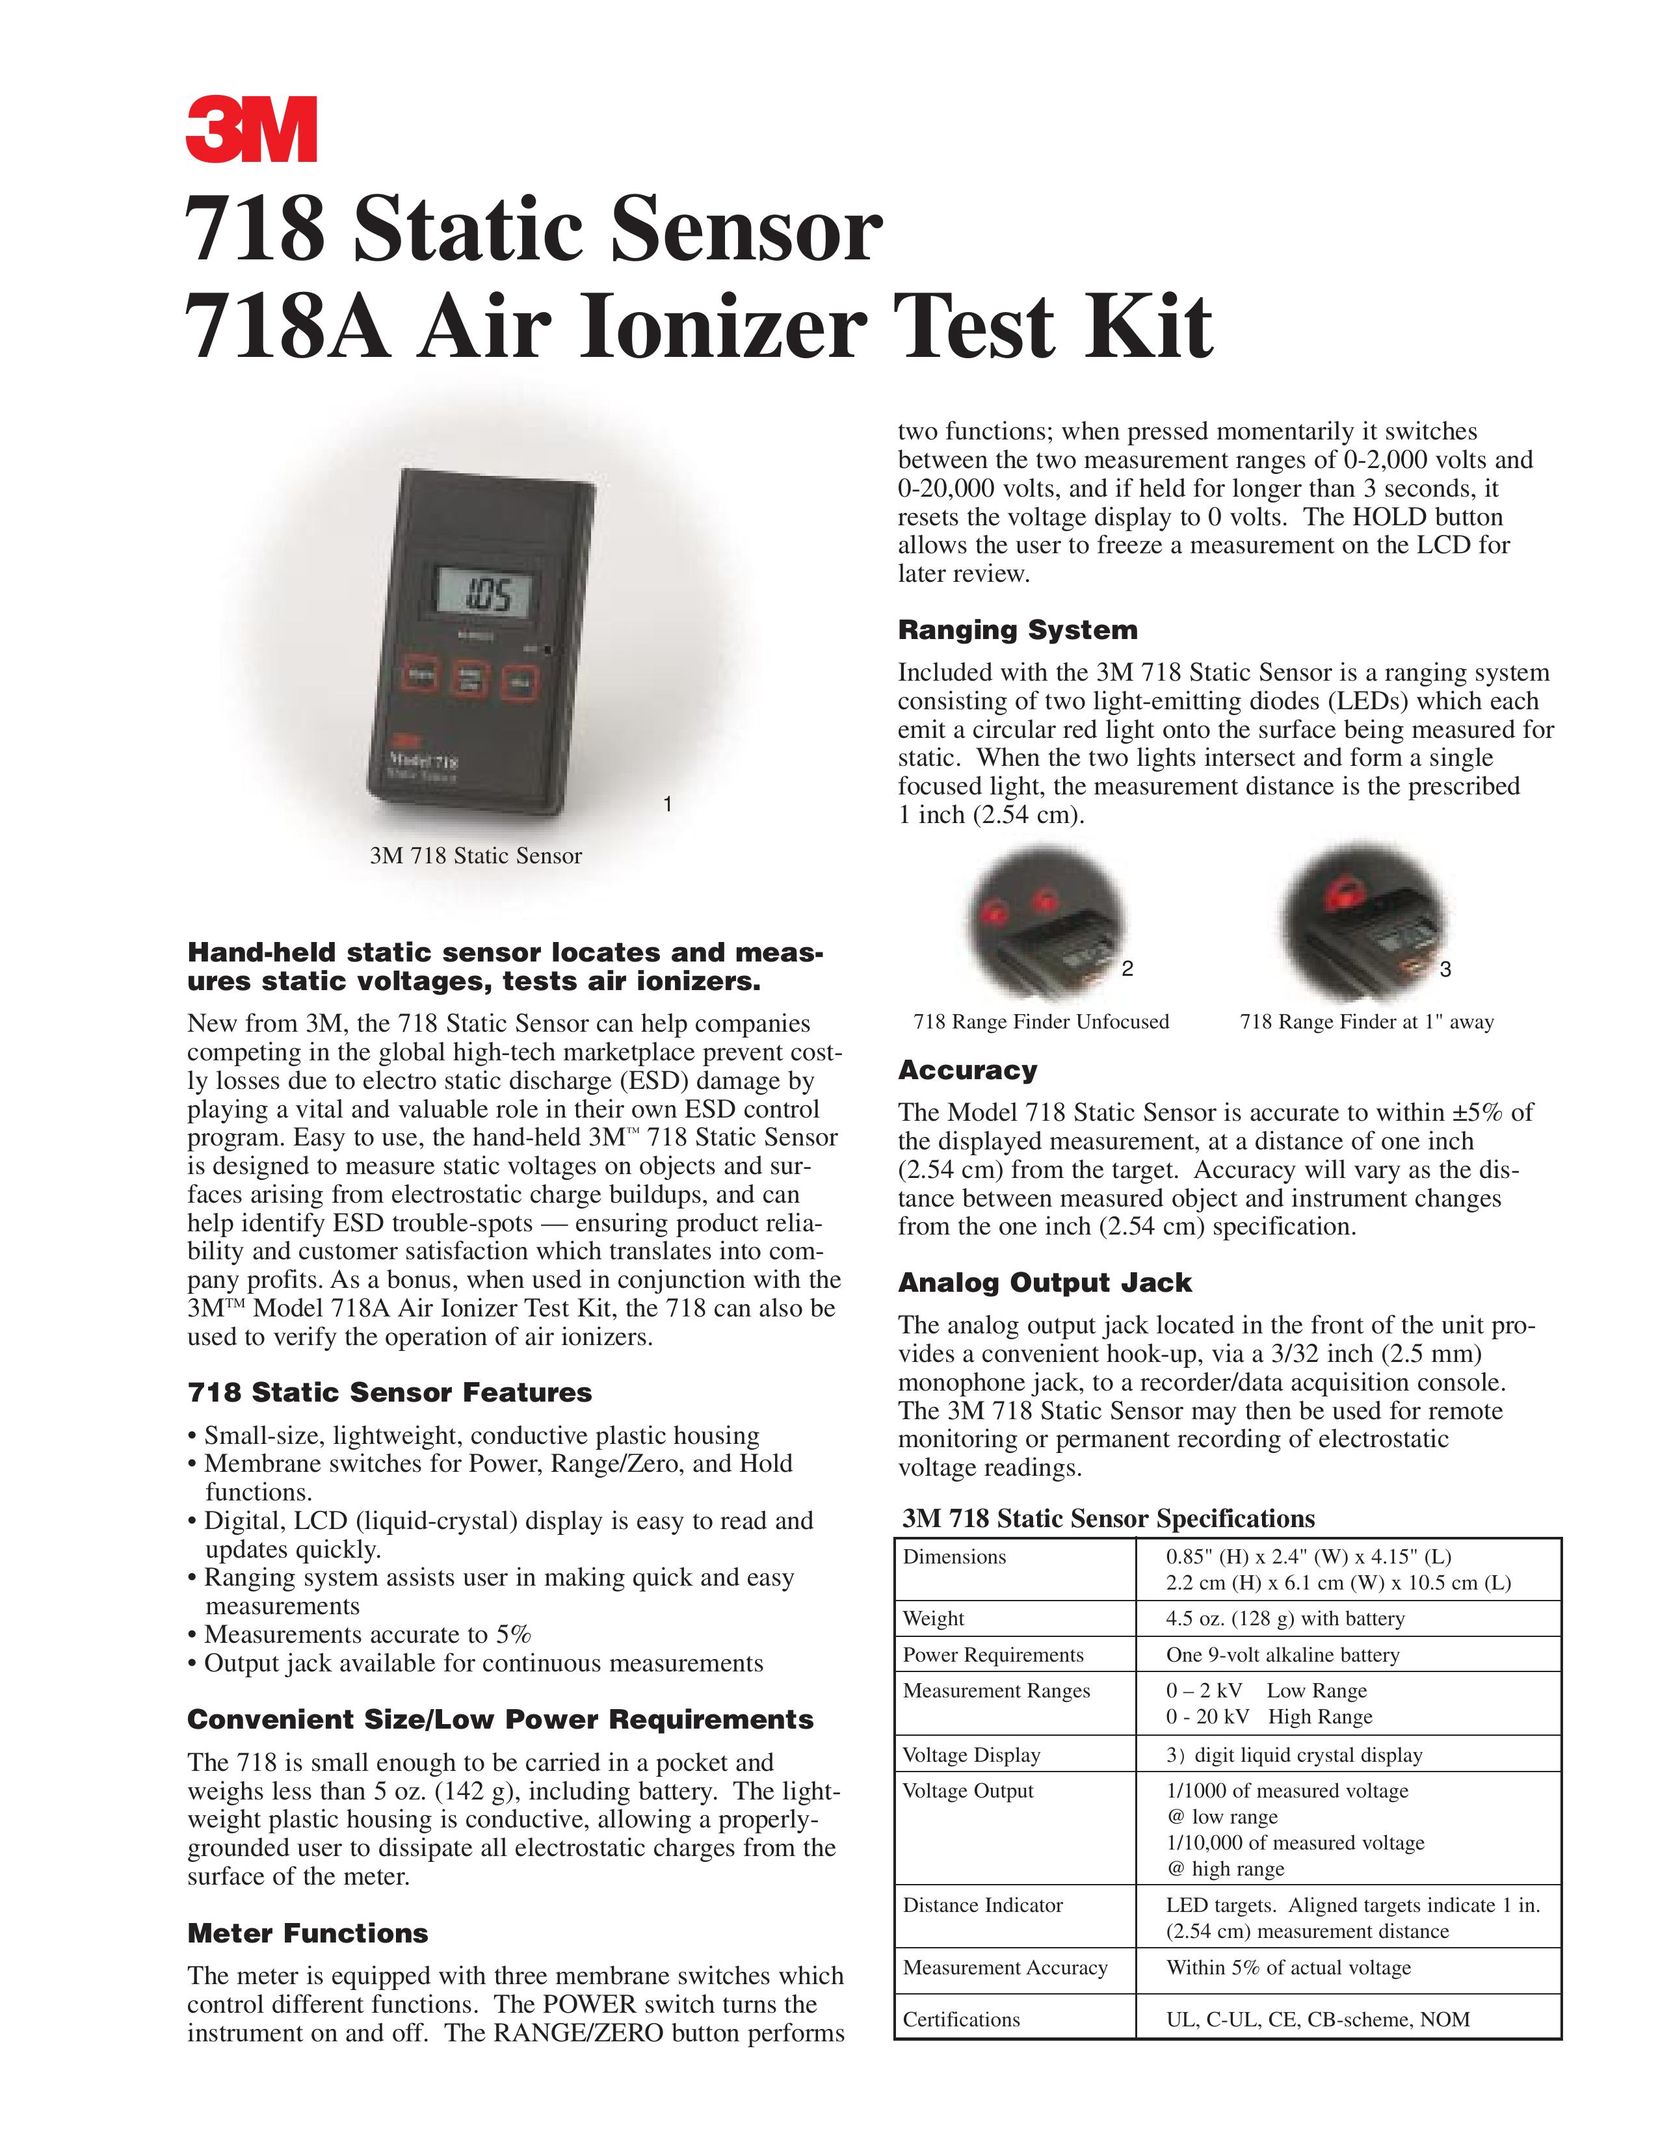 3M 718 Air Cleaner User Manual